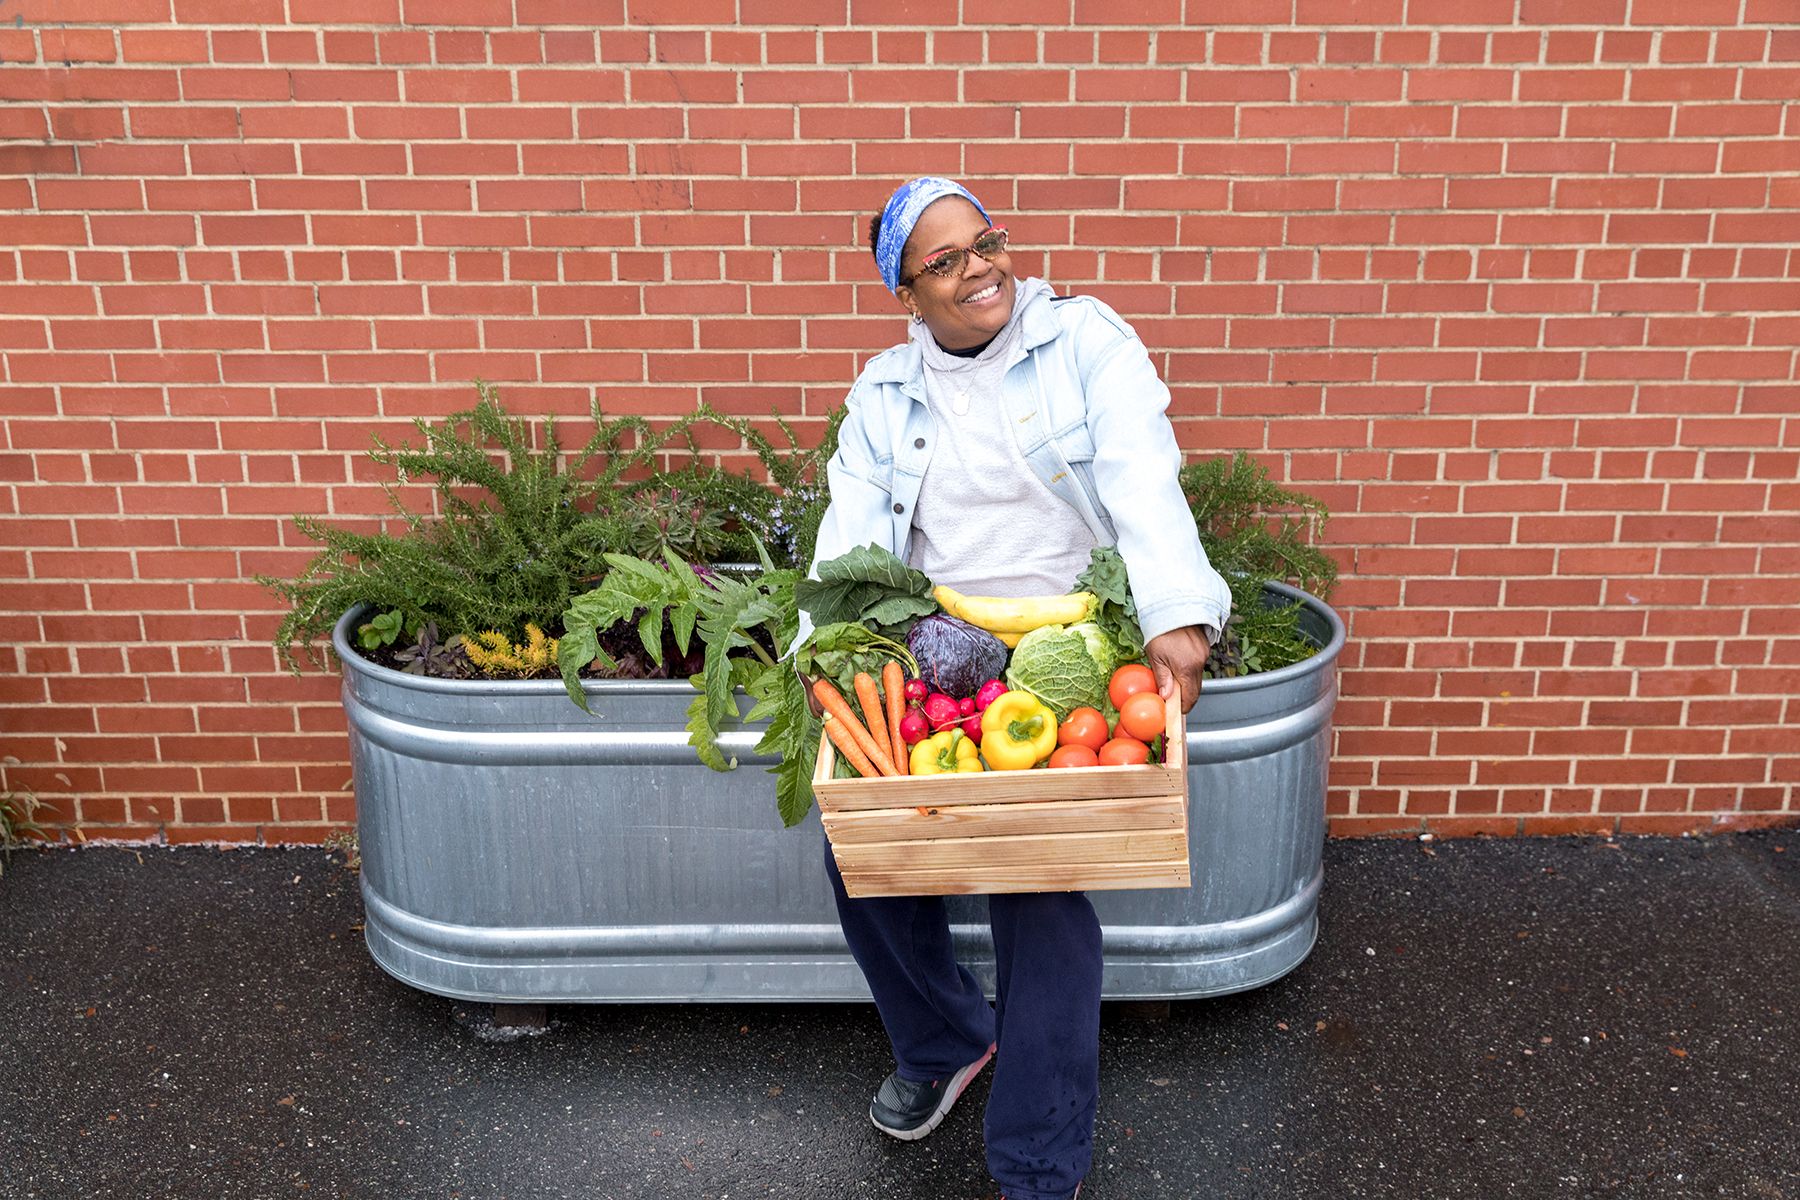 Η Nadine Ford χρησιμοποιεί τη δια βίου αγάπη της για την κηπουρική για να ταΐσει την κοινότητά της